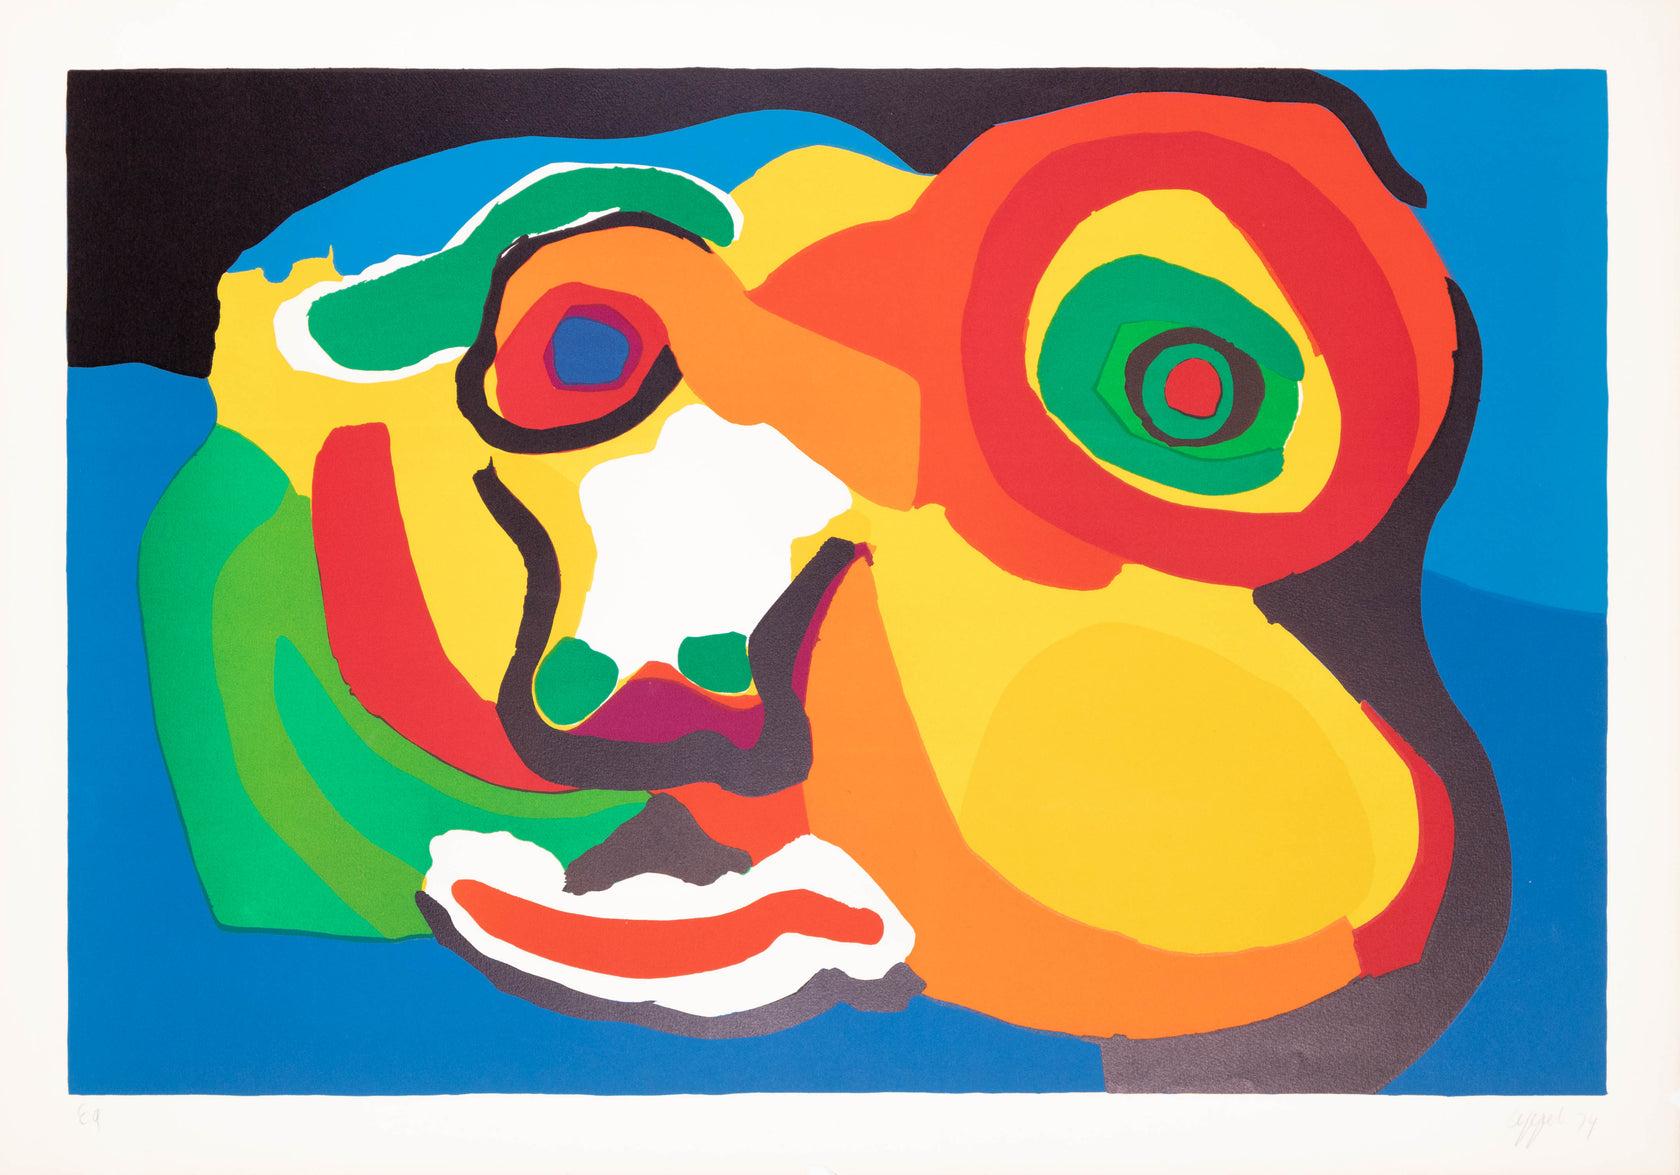 Artistics : Karel Appel 

Moyen d'expression : Lithographie originale, 1974 

Dimensions : 28 x 40 in, 71 cm x 101 cm

Papier Arches - Excellent état A+

Cette lithographie originale colorée et lumineuse d'Artistics est une épreuve d'artiste et est